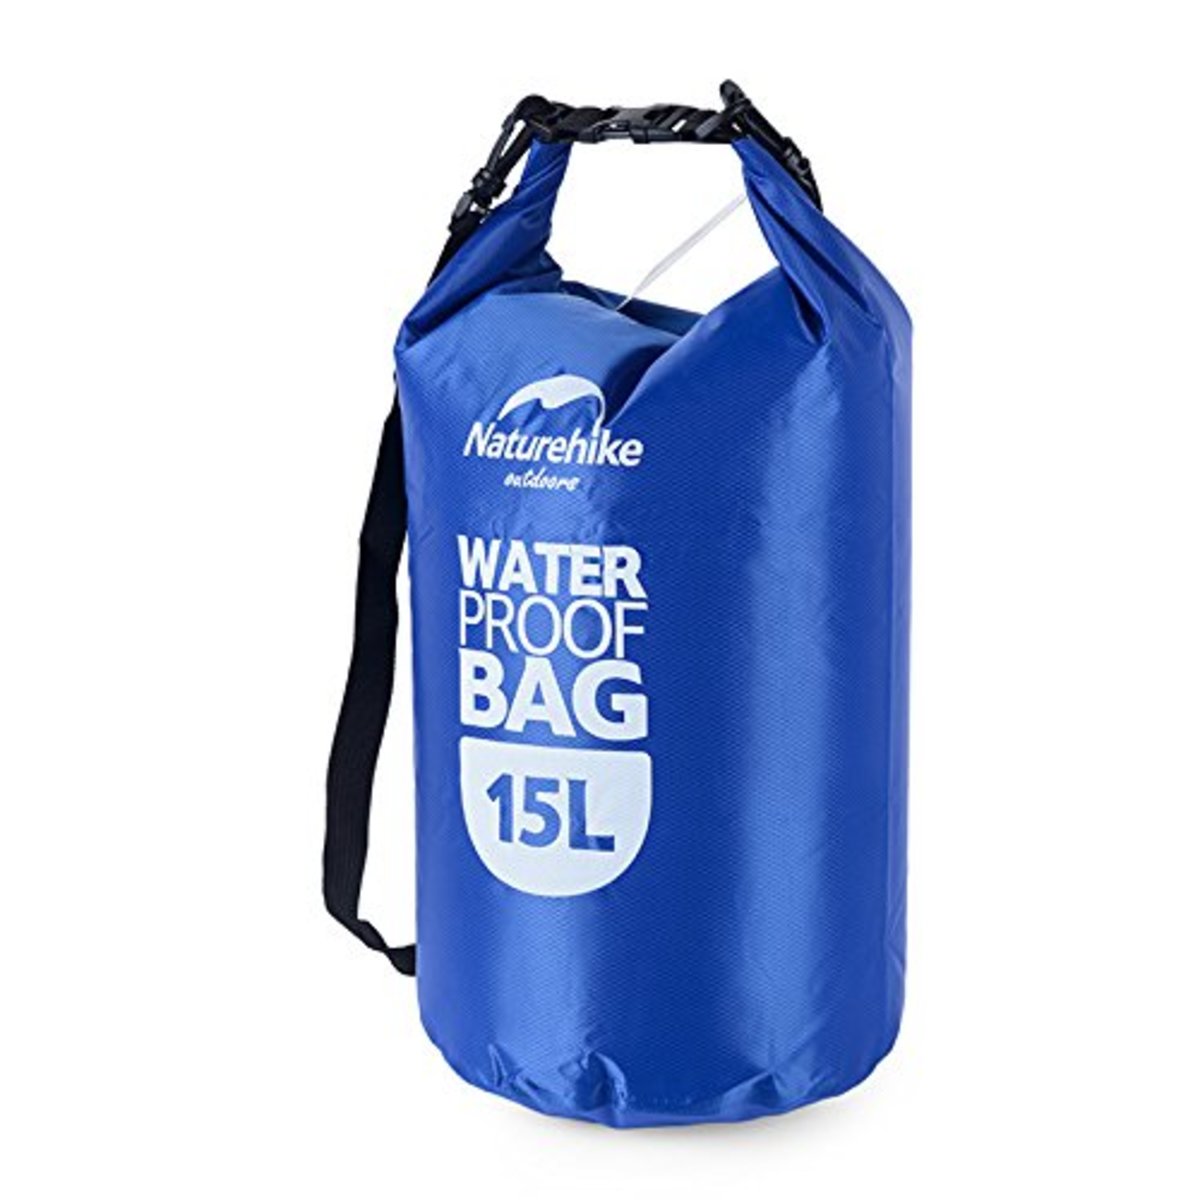 waterproof bag 15l